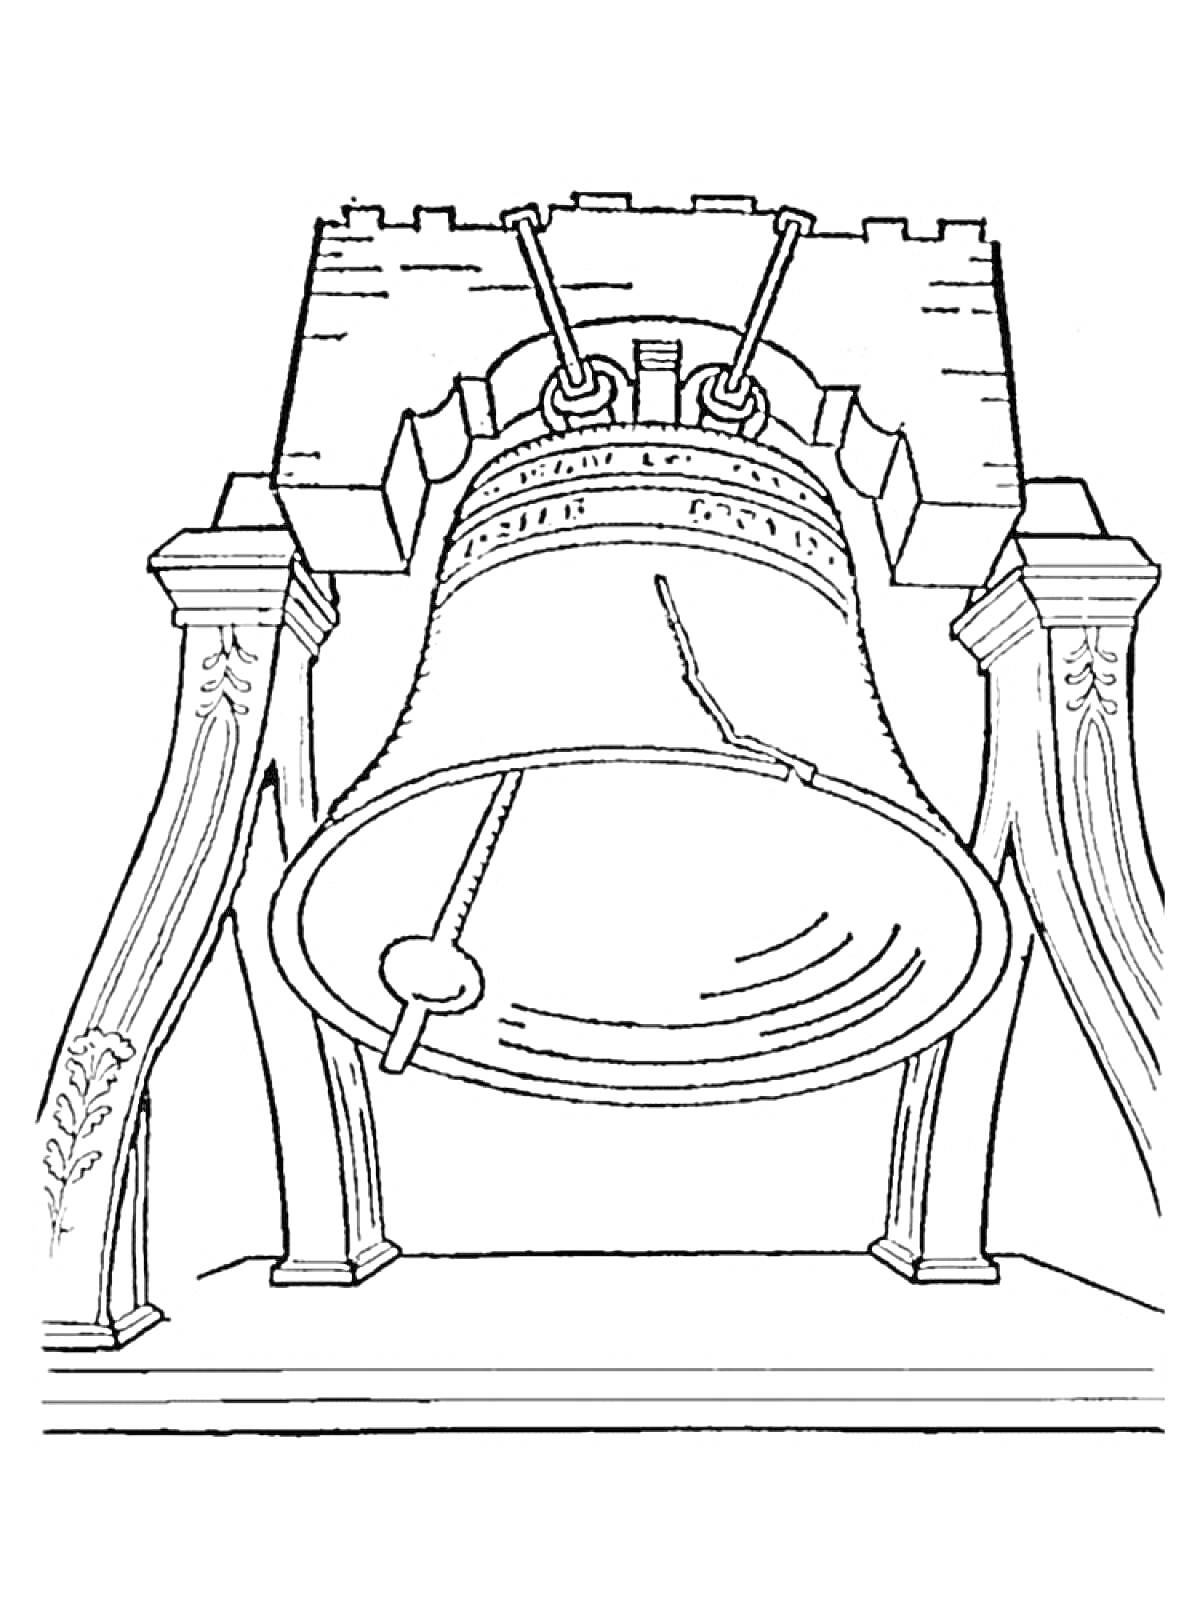 Колокол в каменной арке с резными столбами